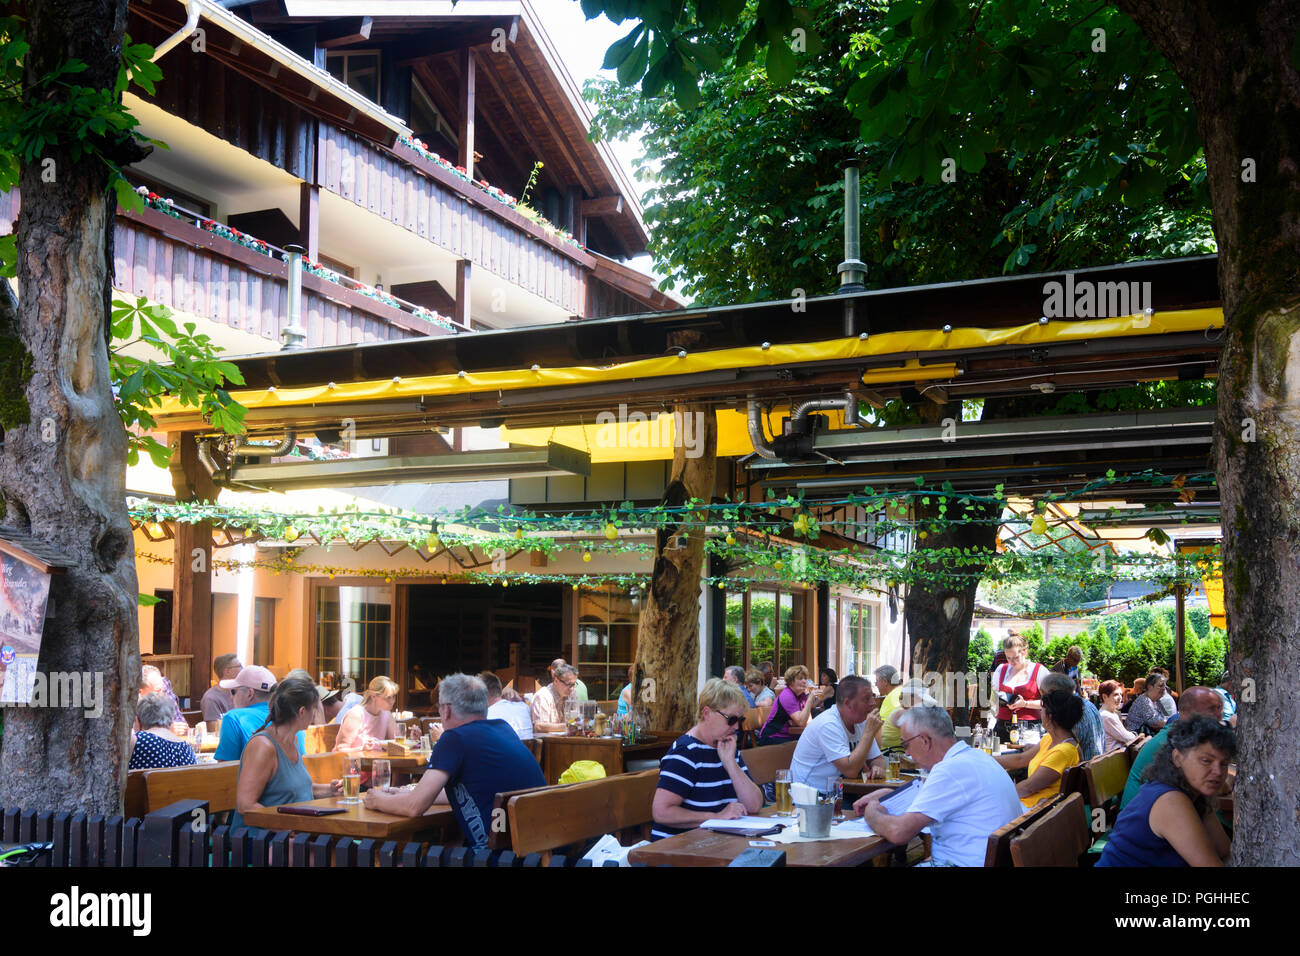 Oberstdorf: historisches Hotel und Restaurant "Traube", Schwaben, Allgäu,  Schwaben, Bayern, Bayern, Deutschland Stockfotografie - Alamy